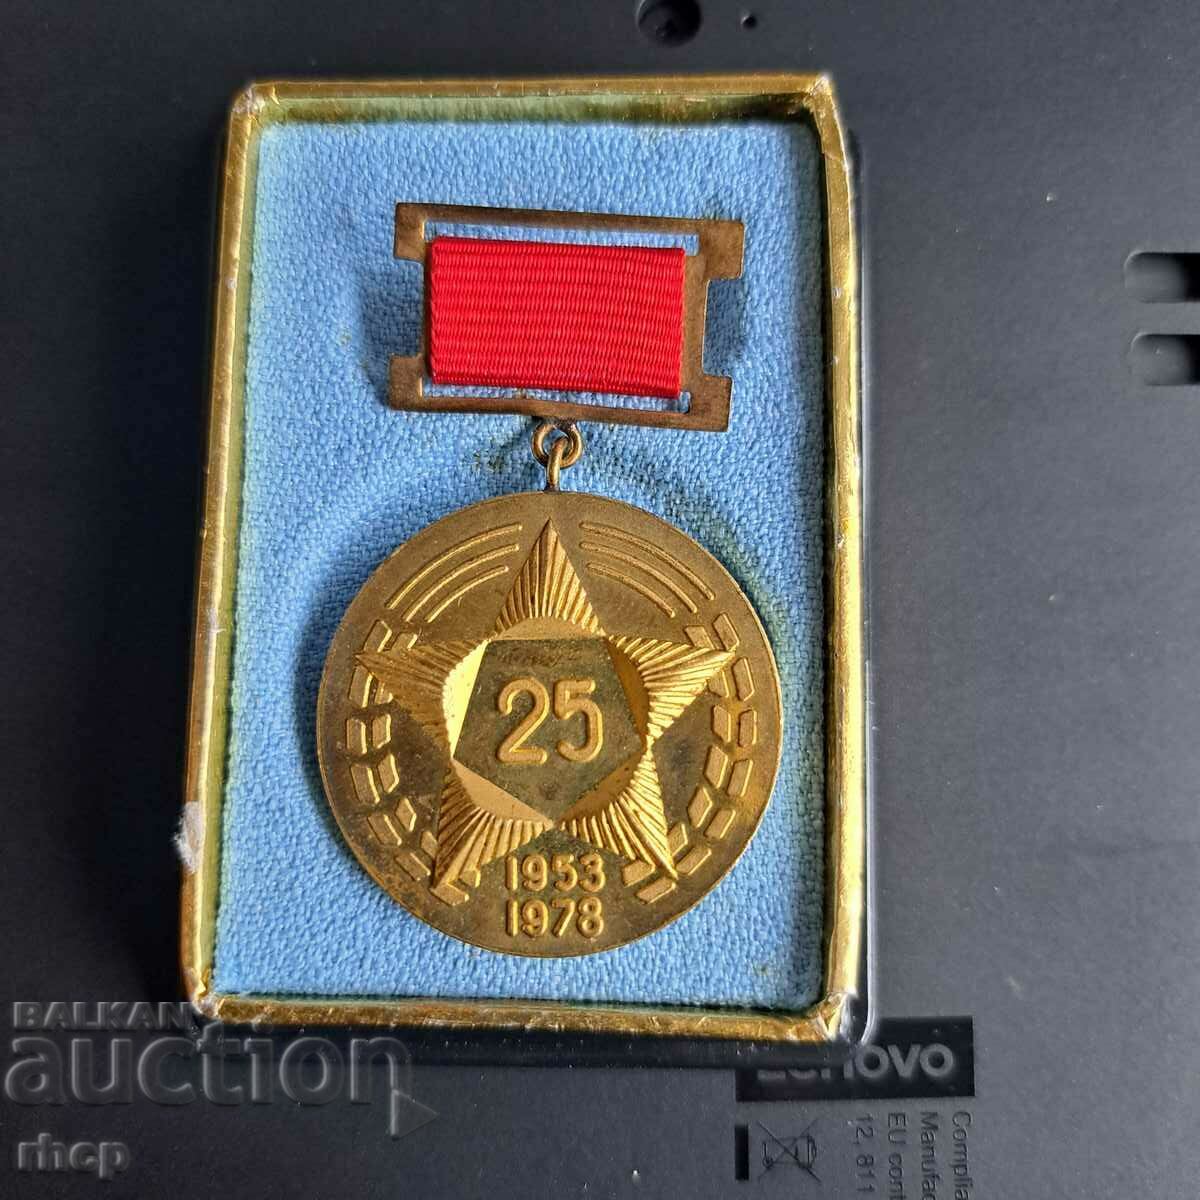 20 ani Hlebozavod-1 Sofia 1953-1978 medalie cu boxa